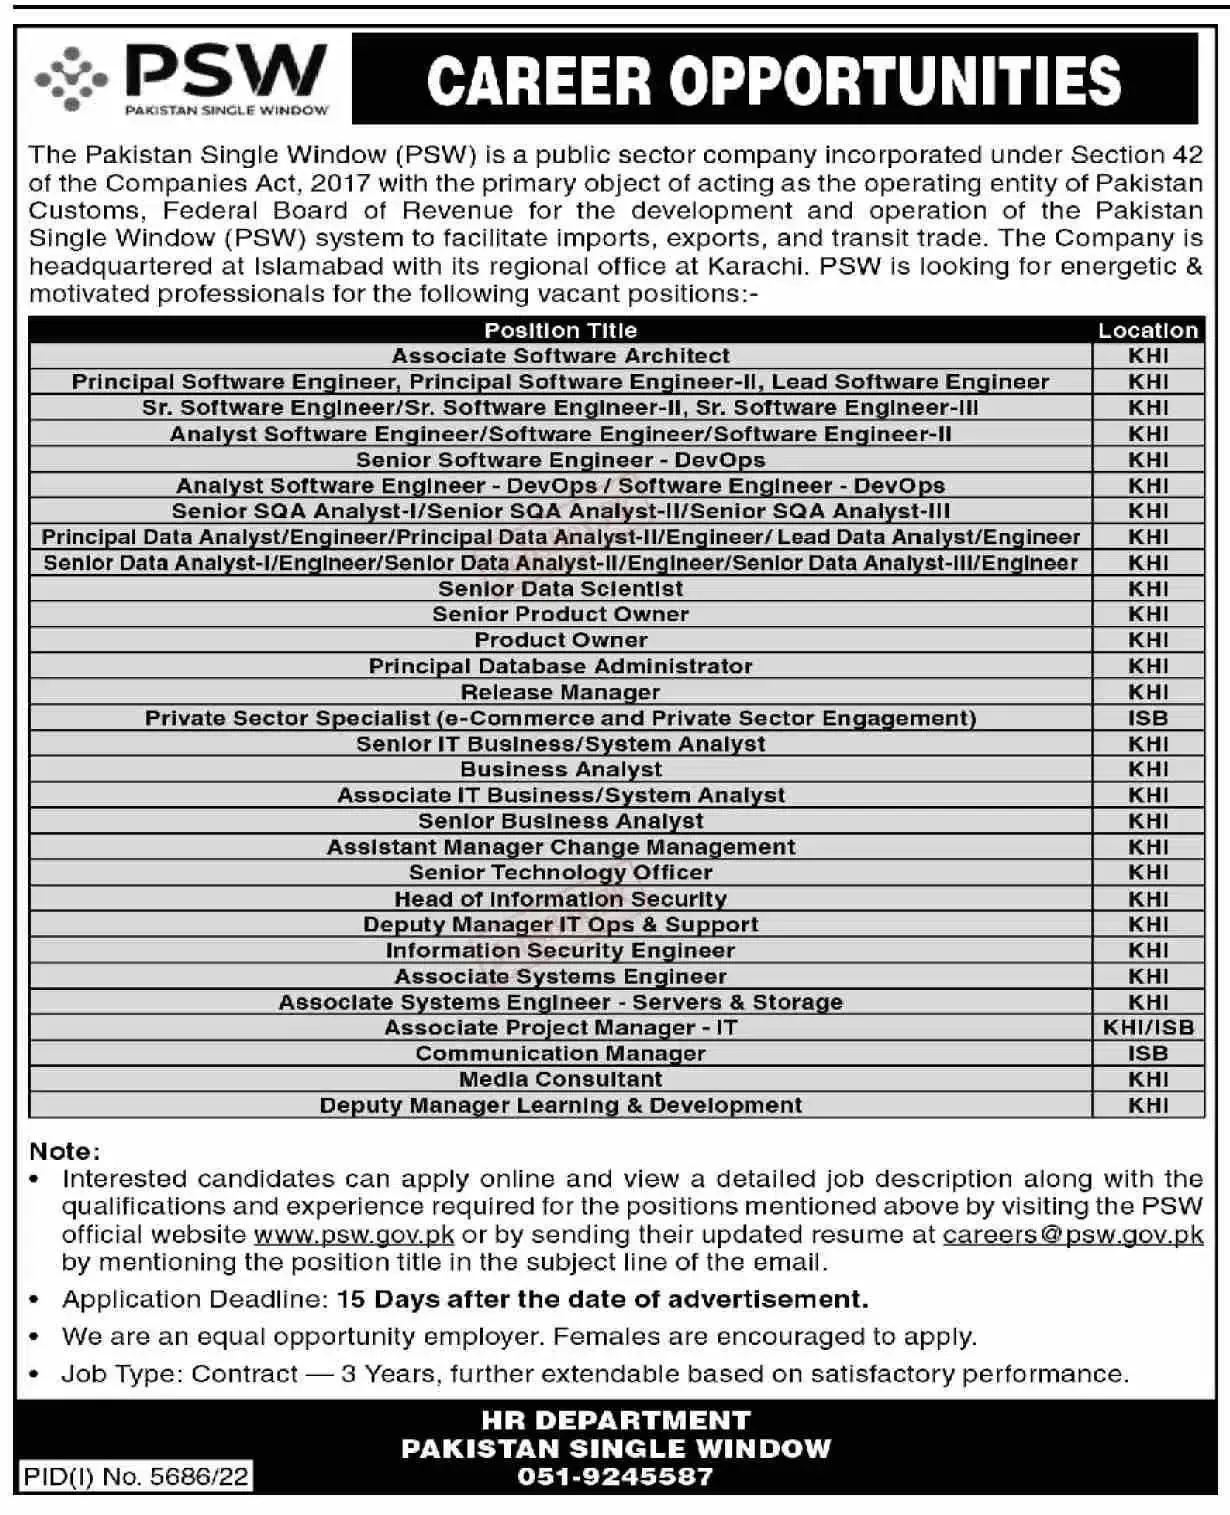 Pakistan single window jobs 2023 advertisement